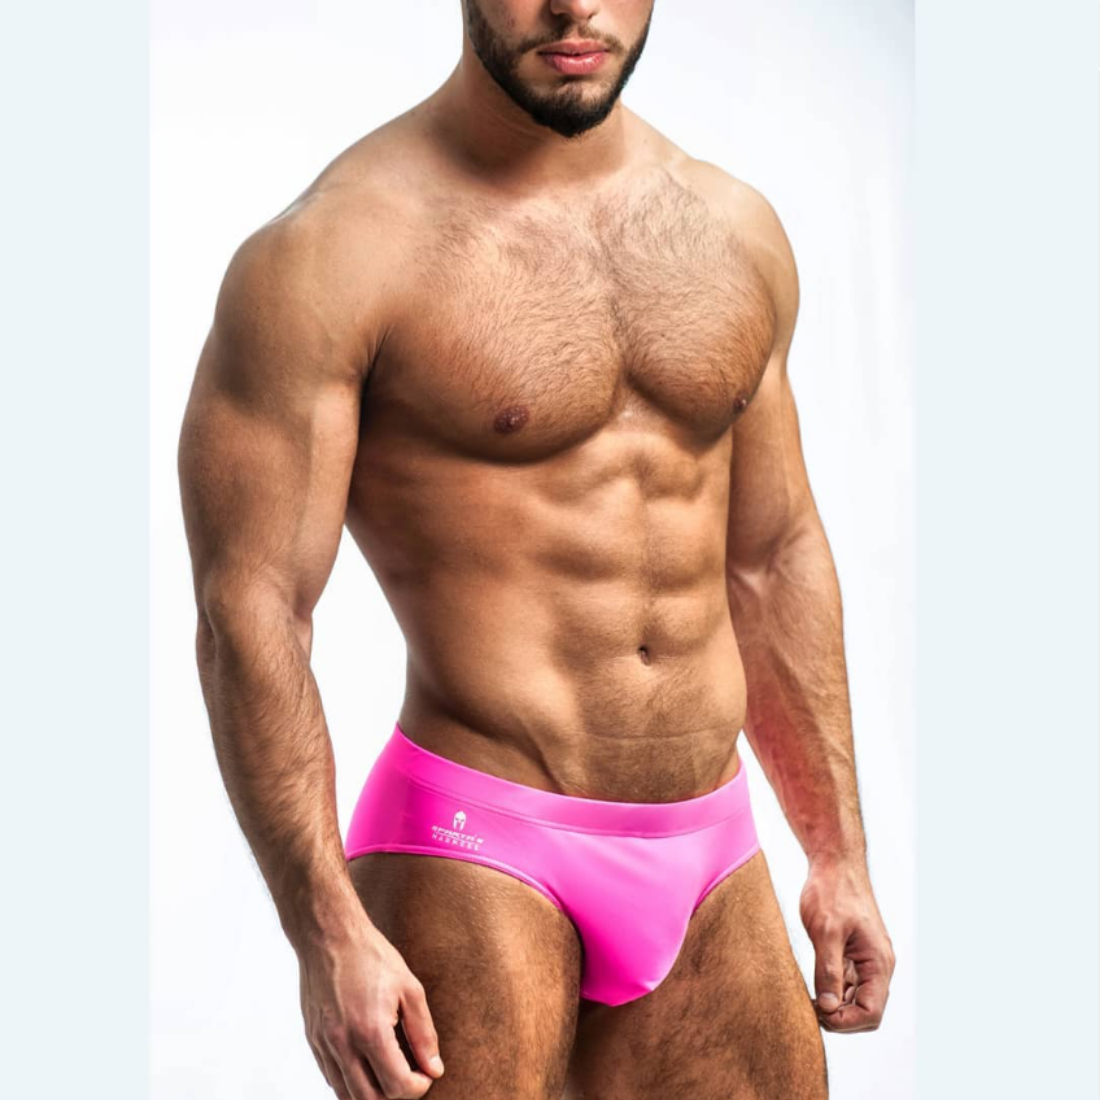 Roze zwemslip ontworpen door het Italiaanse modehuis Sparta’s Harness en te koop bij Flavourez.